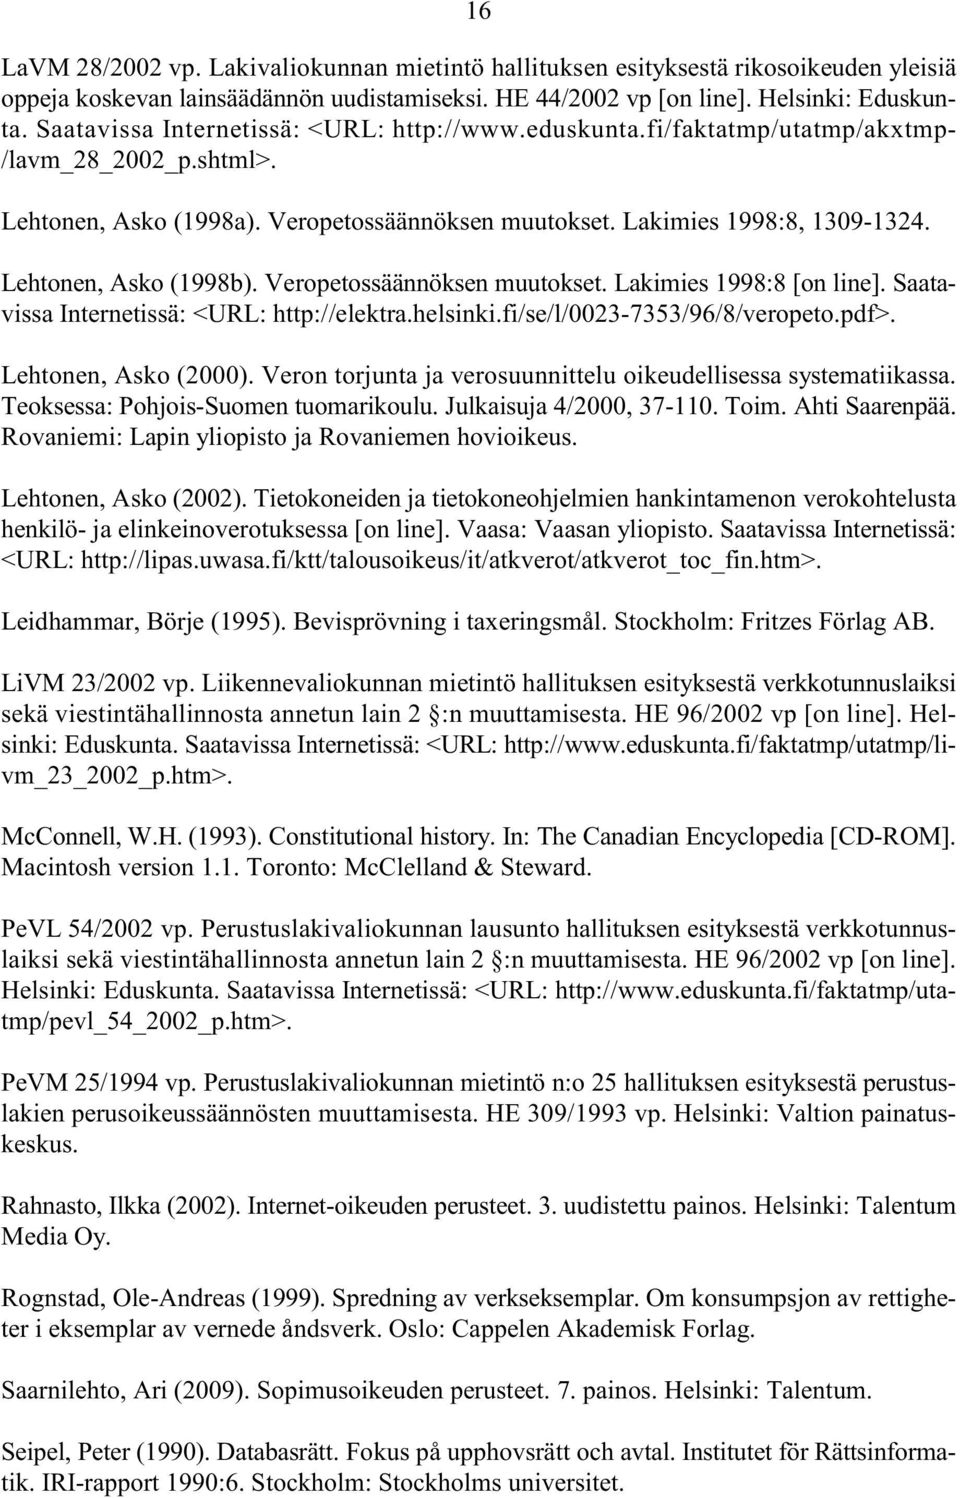 Lehtonen, Asko (1998b). Veropetossäännöksen muutokset. Lakimies 1998:8 [on line]. Saatavissa Internetissä: <URL: http://elektra.helsinki.fi/se/l/0023-7353/96/8/veropeto.pdf>. Lehtonen, Asko (2000).